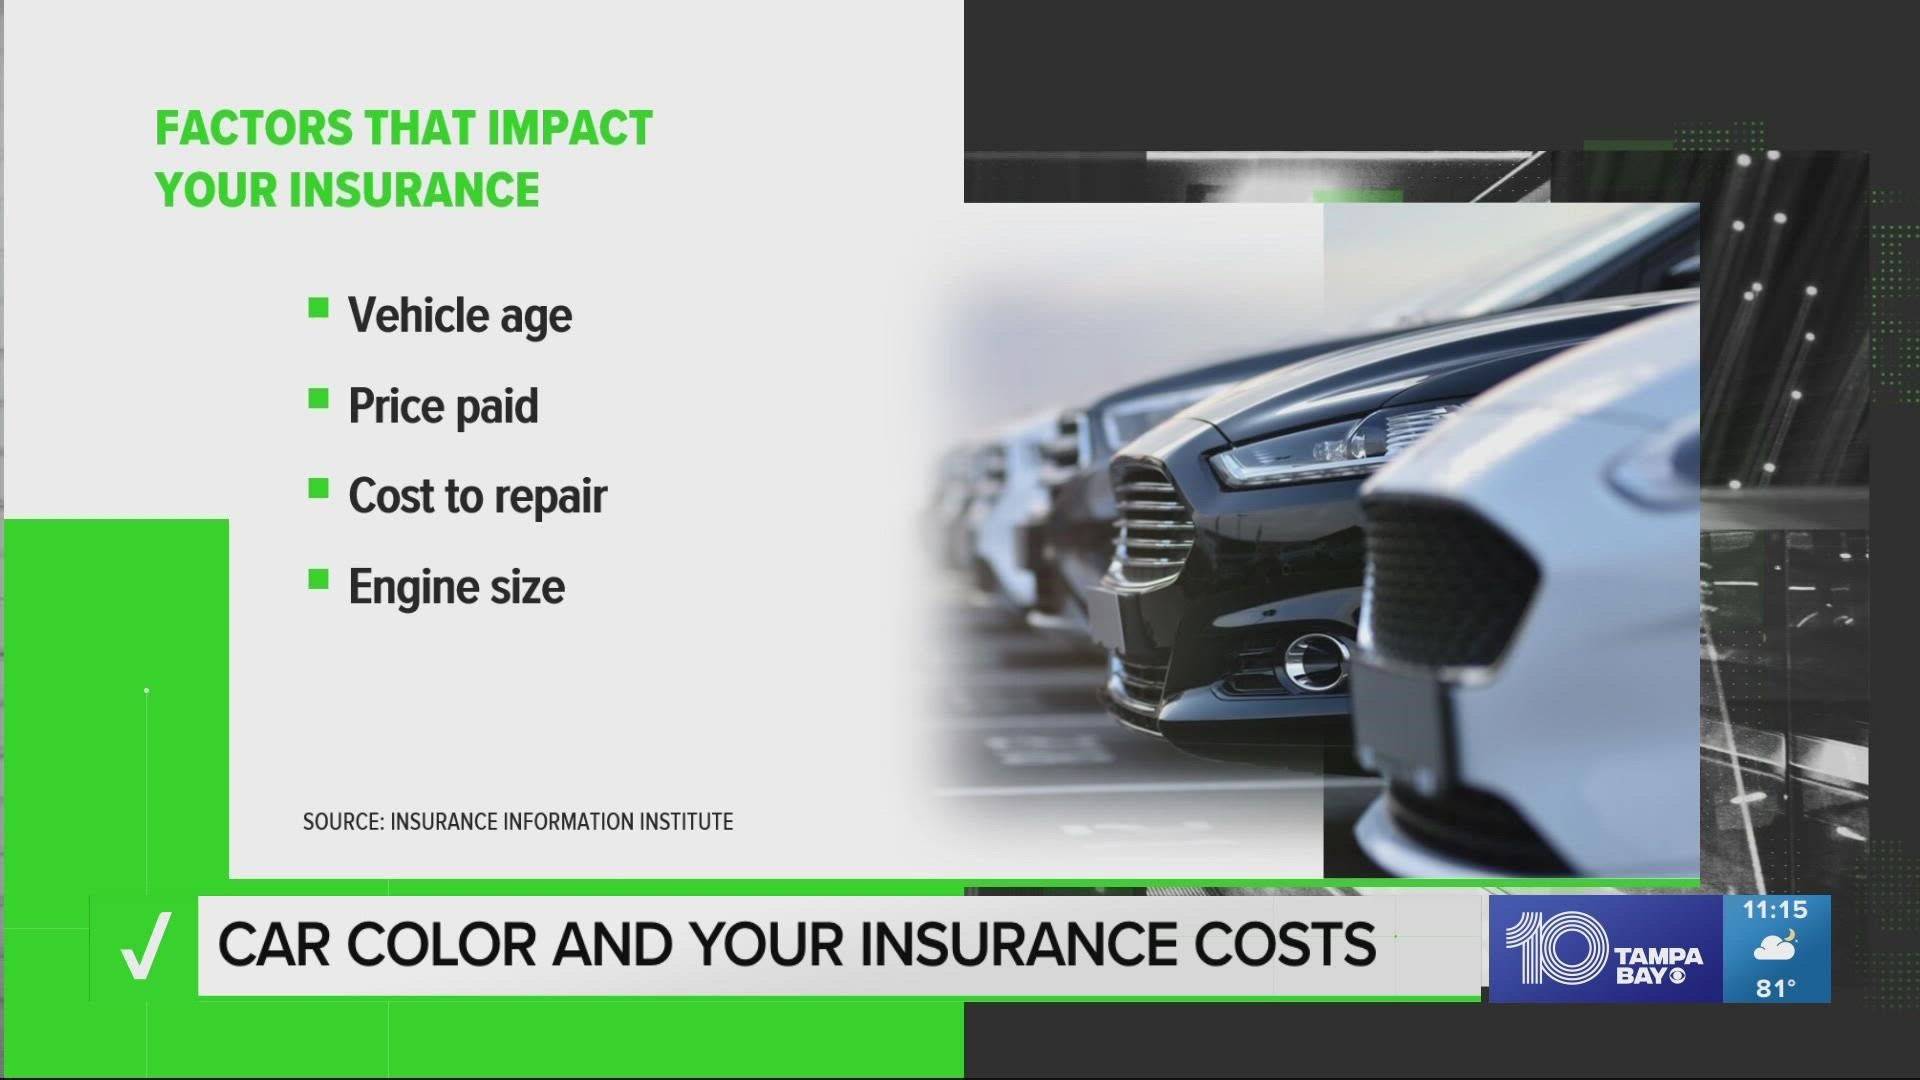 Several factors impact your auto insurance premium but not your car’s color, despite popular myths.